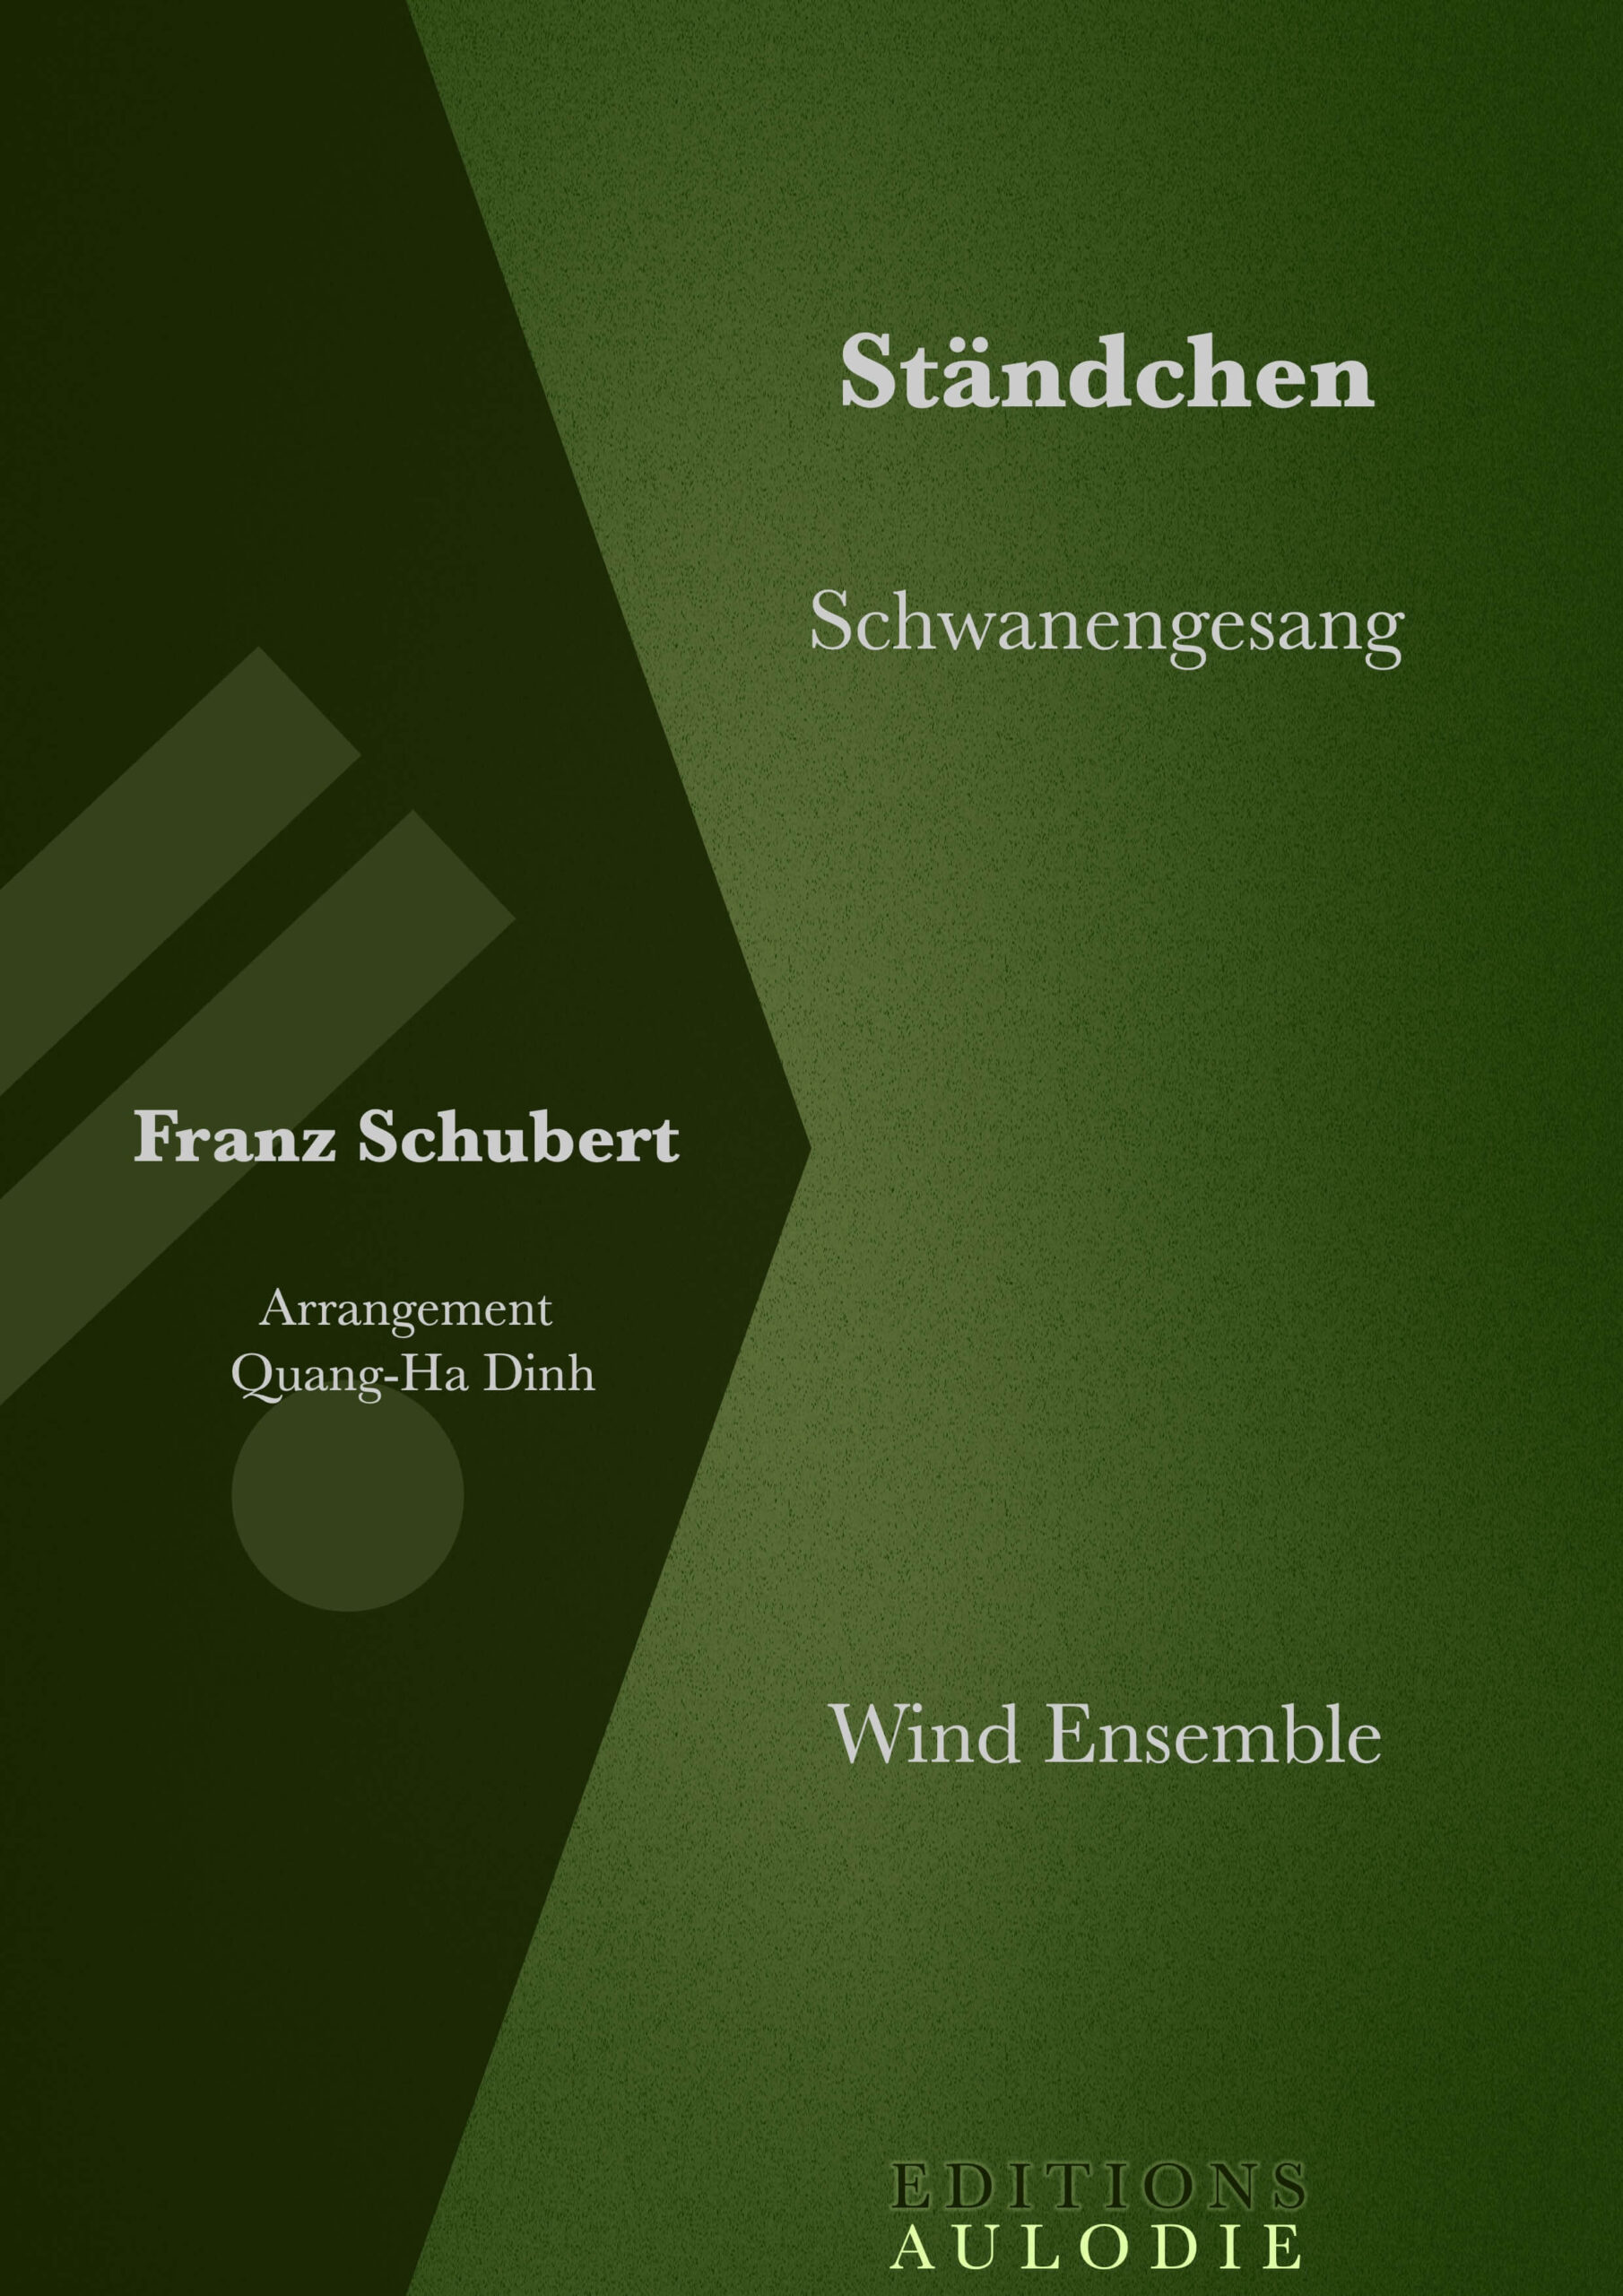 EA01069-Standchen-Schwanengesang-Franz_Schubert-Wind_Ensemble